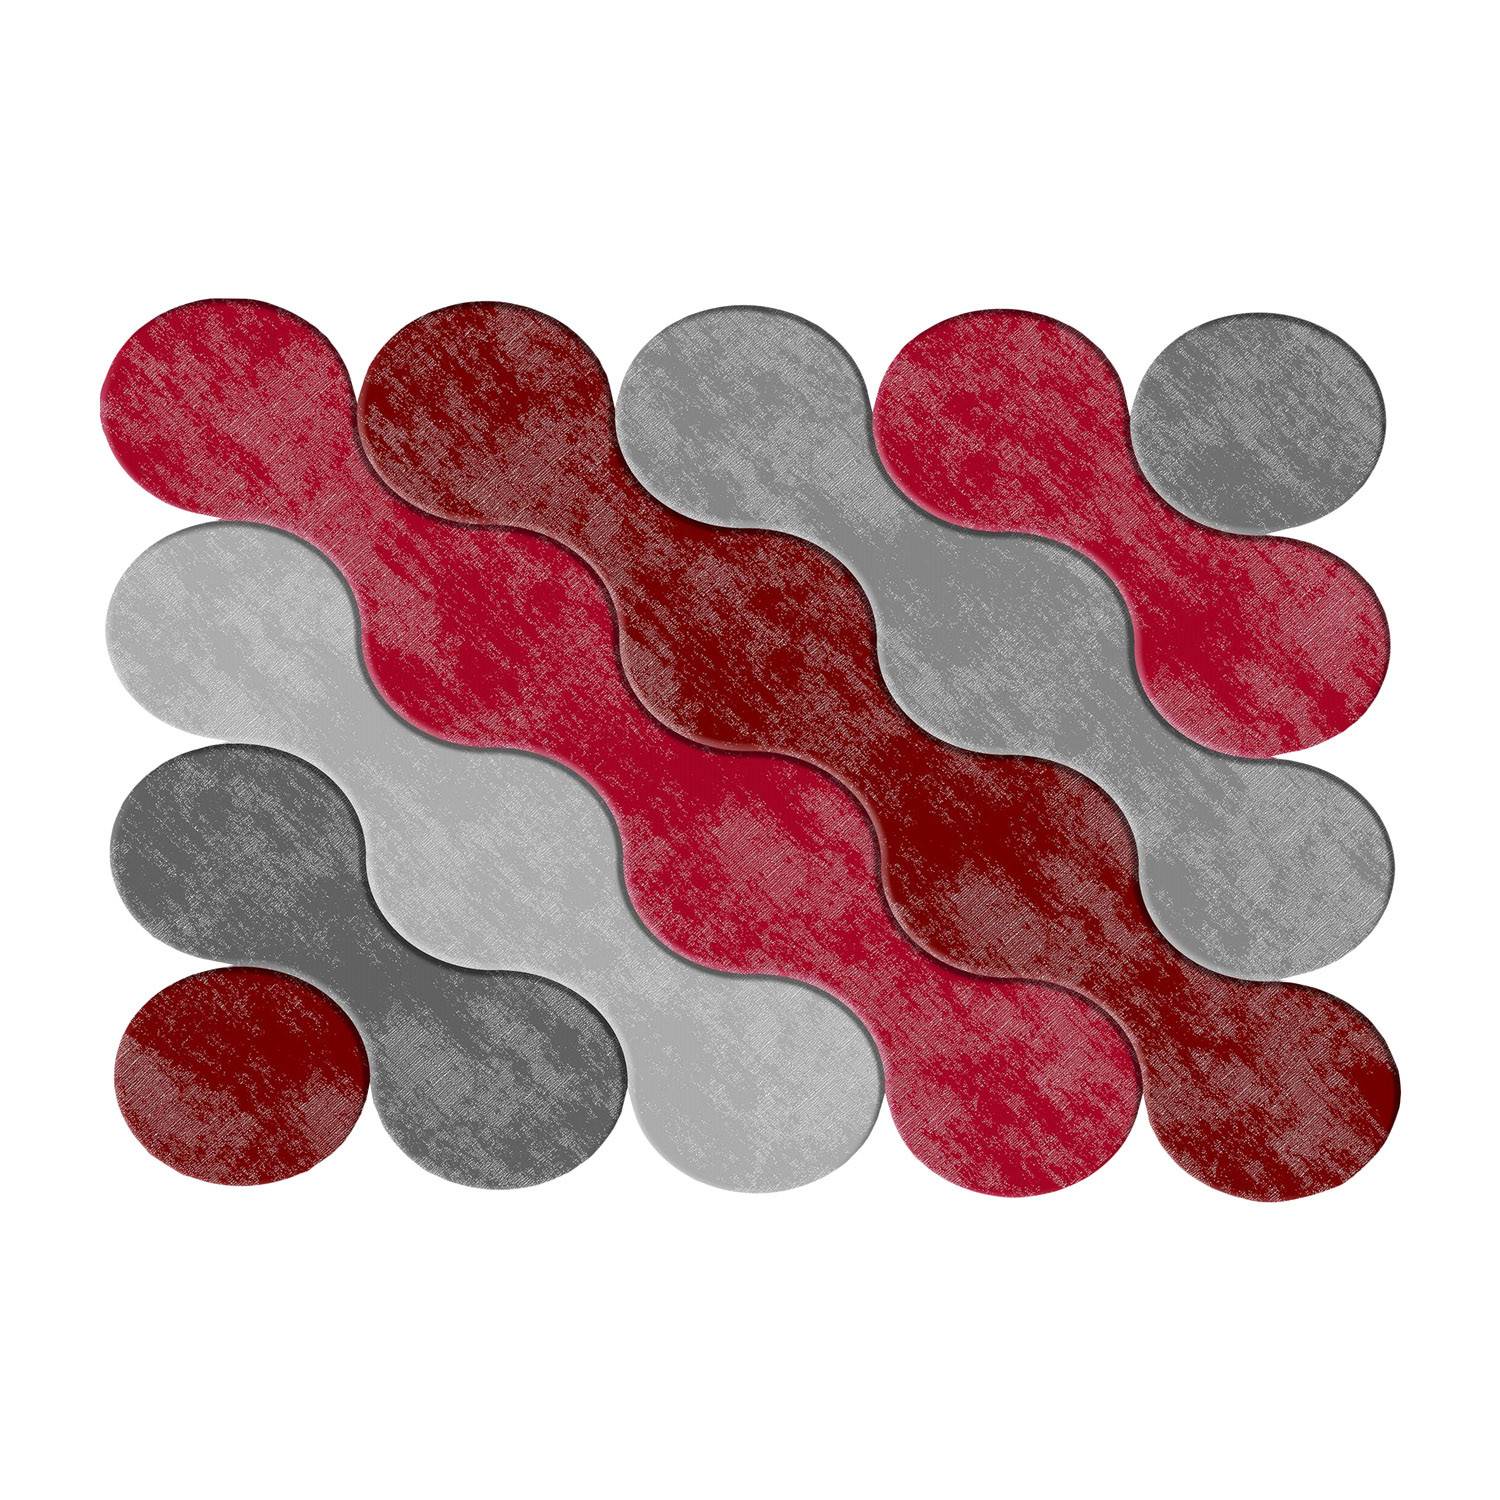 Feraron Teppich 120x180cm Motiv Kreise kombiniert mit Rot und Grau